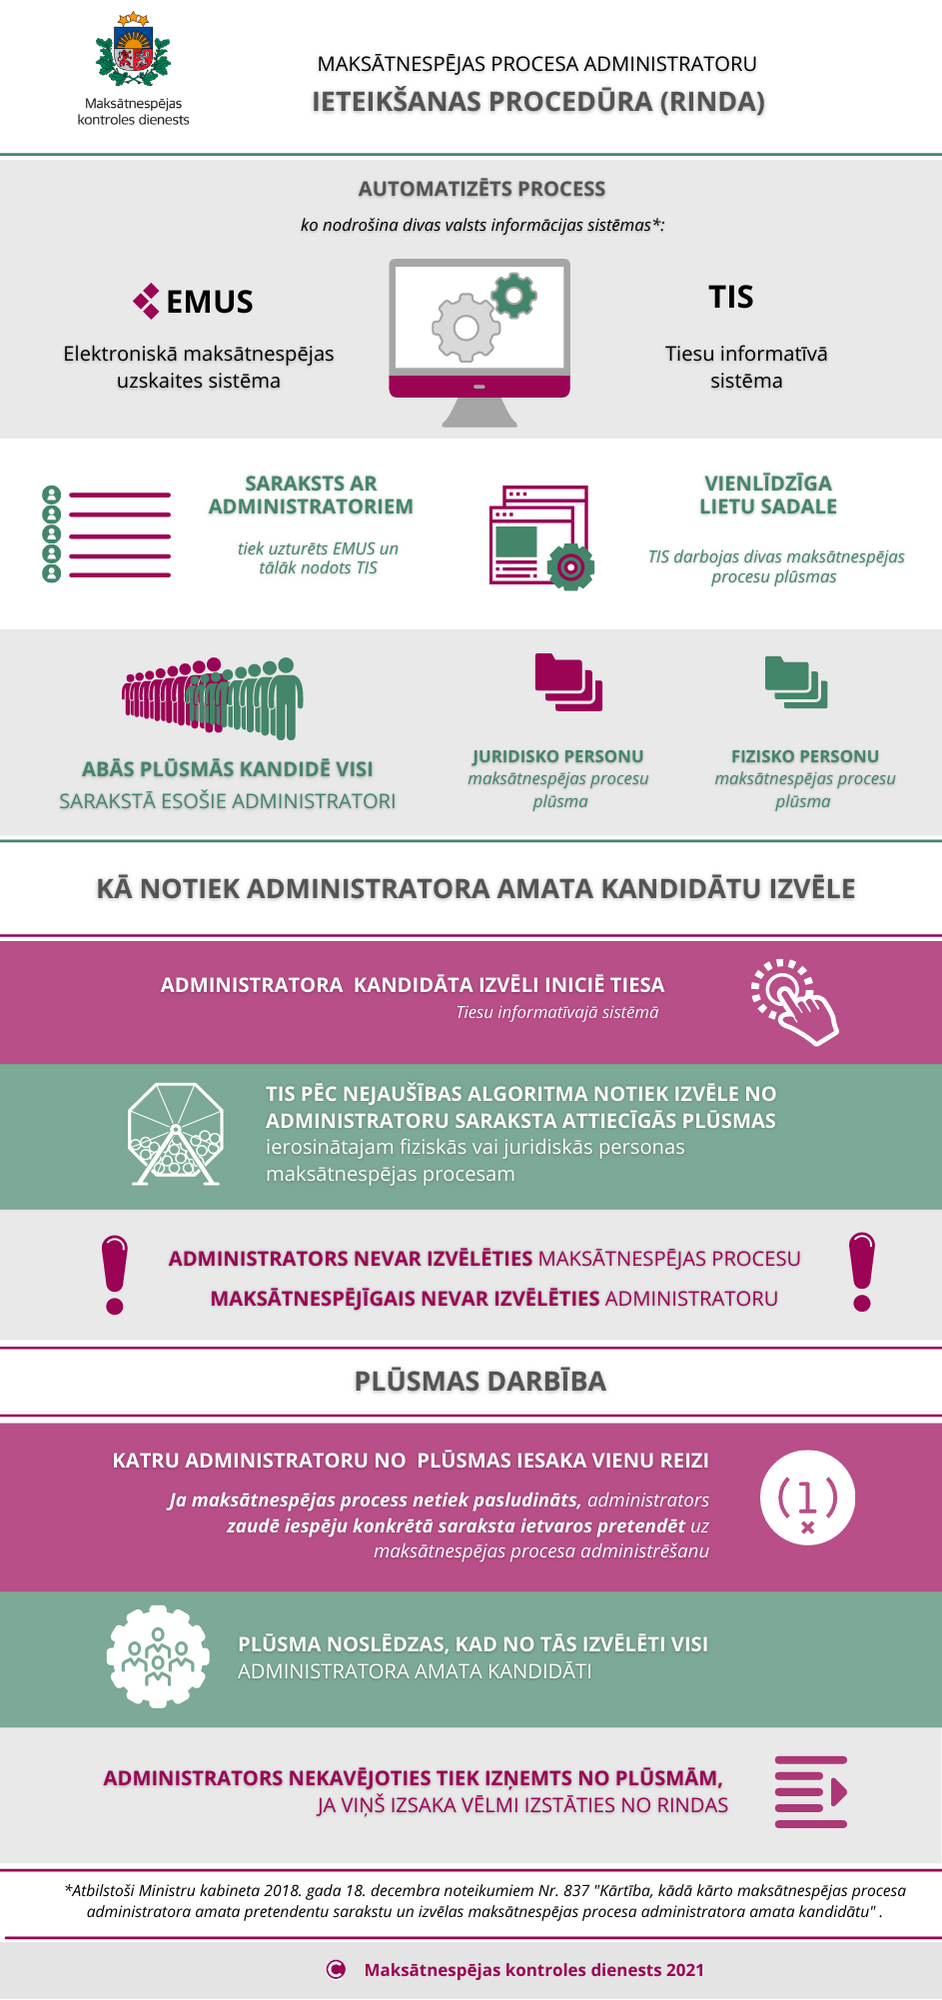 Infografika: Maksātnespējas procesa administratoru ieteikšanas (rindas) procedūra